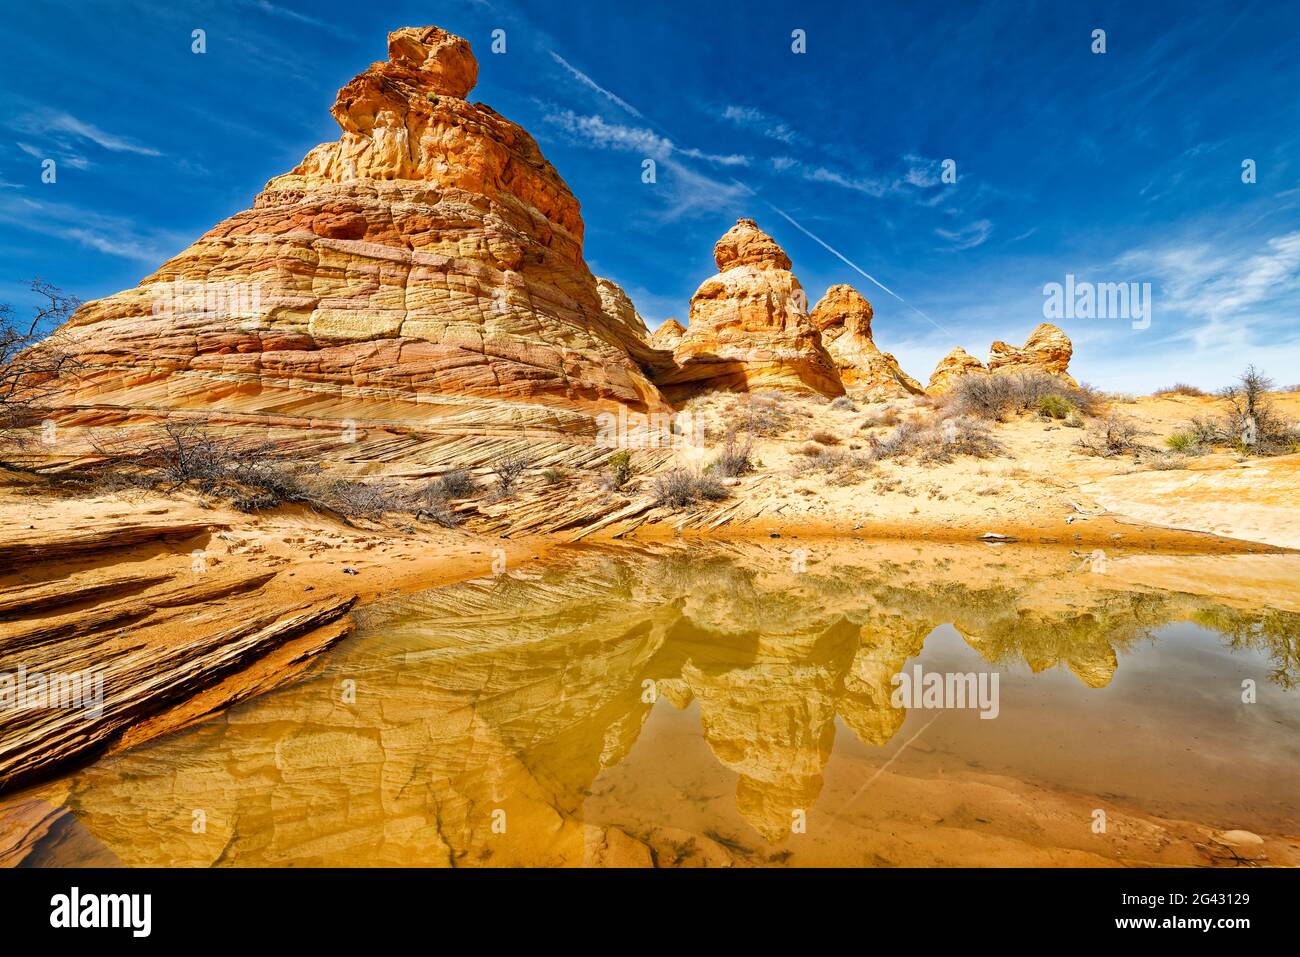 Formations rocheuses de grès reflétant dans l'eau, Coyote Buttes South, Paria Canyon Vermilion Cliffs Wilderness, Arizona, États-Unis Banque D'Images